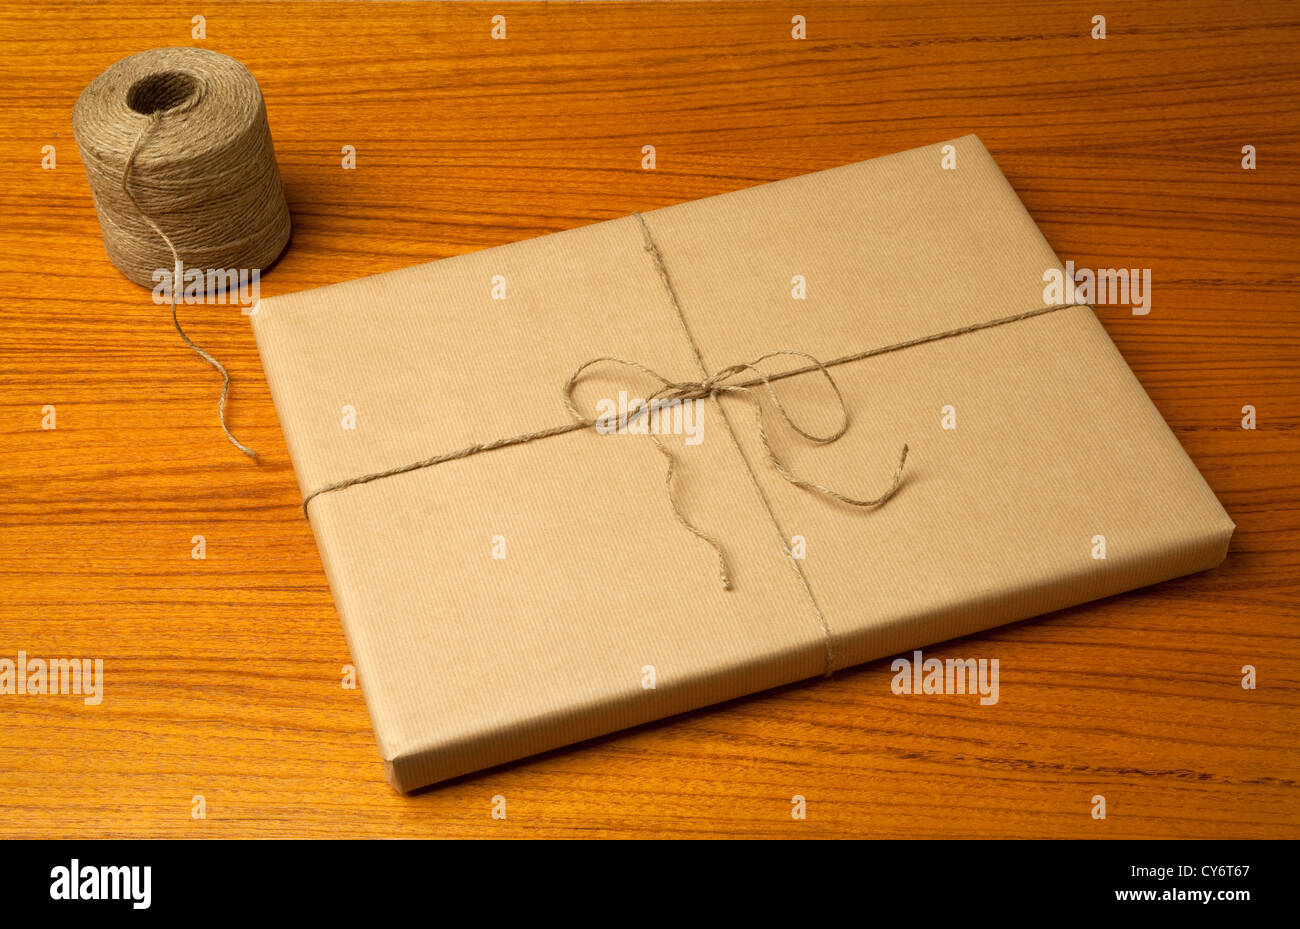 braune Geschenk-Paket mit einer Zeichenfolge und einem Bogen und einer Zeichenfolge Spule auf einem Holztisch mit Körnung Muster Stockfoto